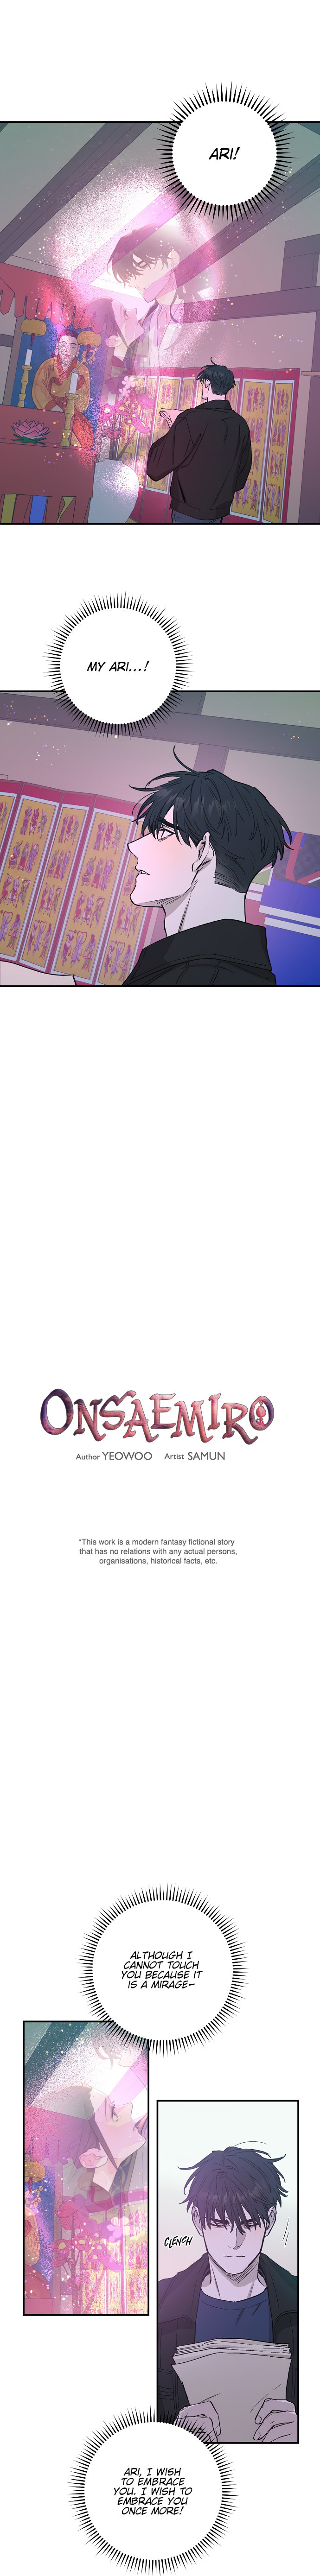 Onsaemiro - Chapter 26 Page 1